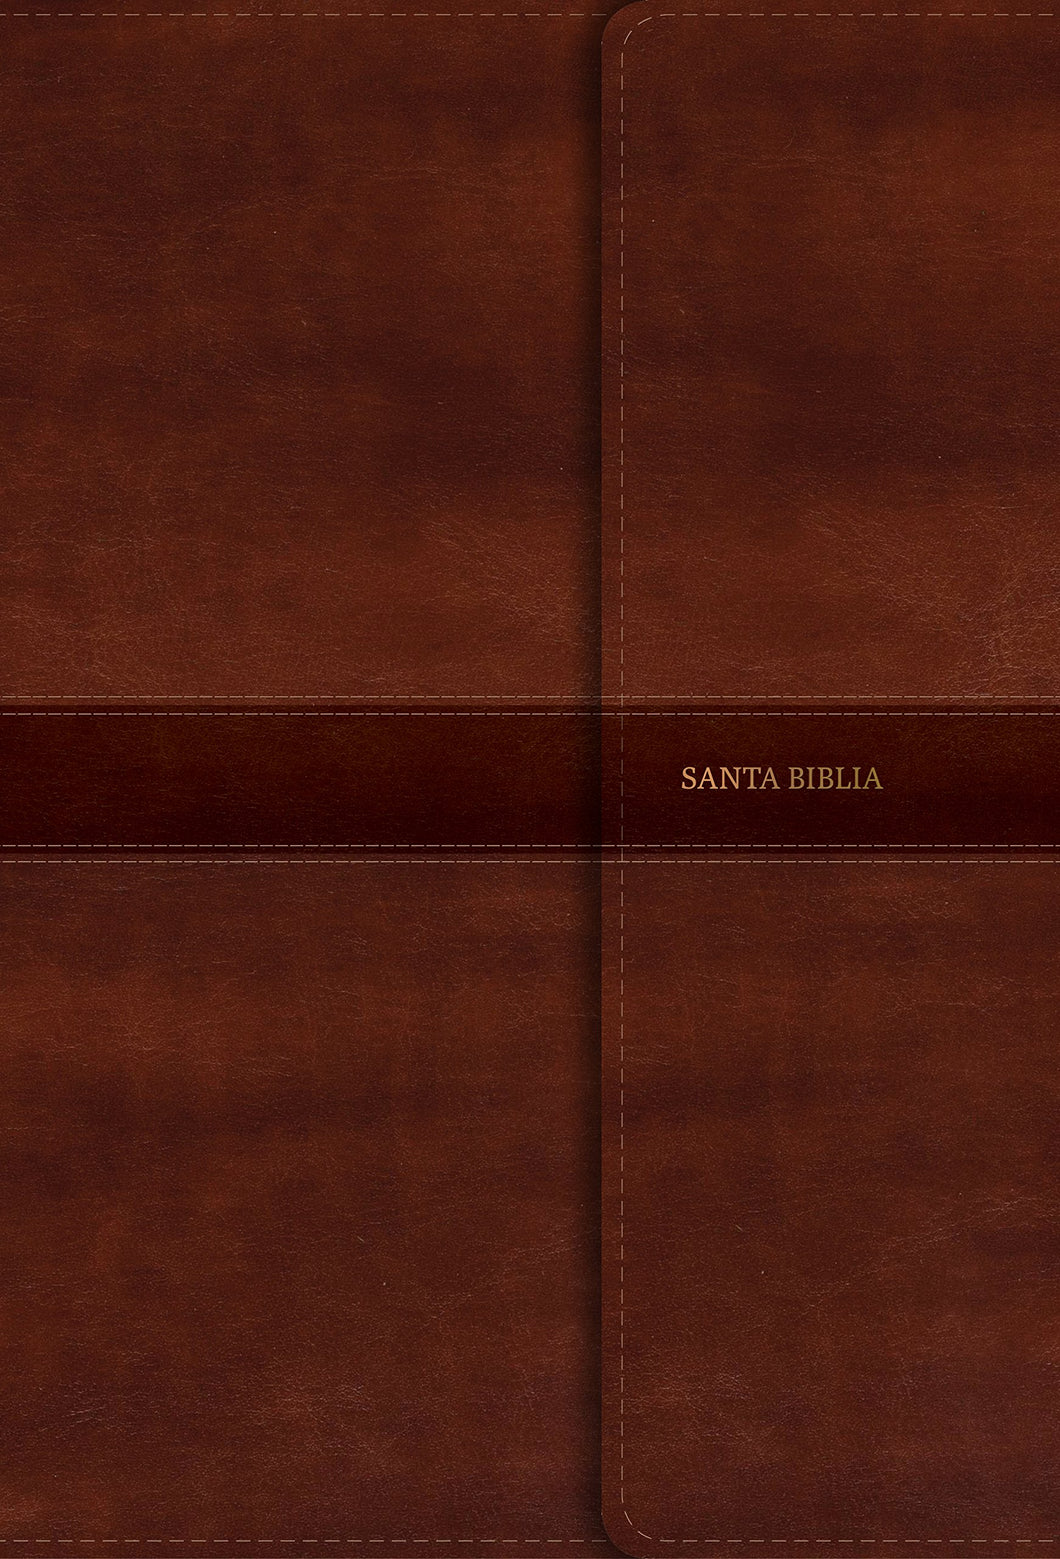 RVR 1960 Biblia Letra Gigante marrón con réferencias